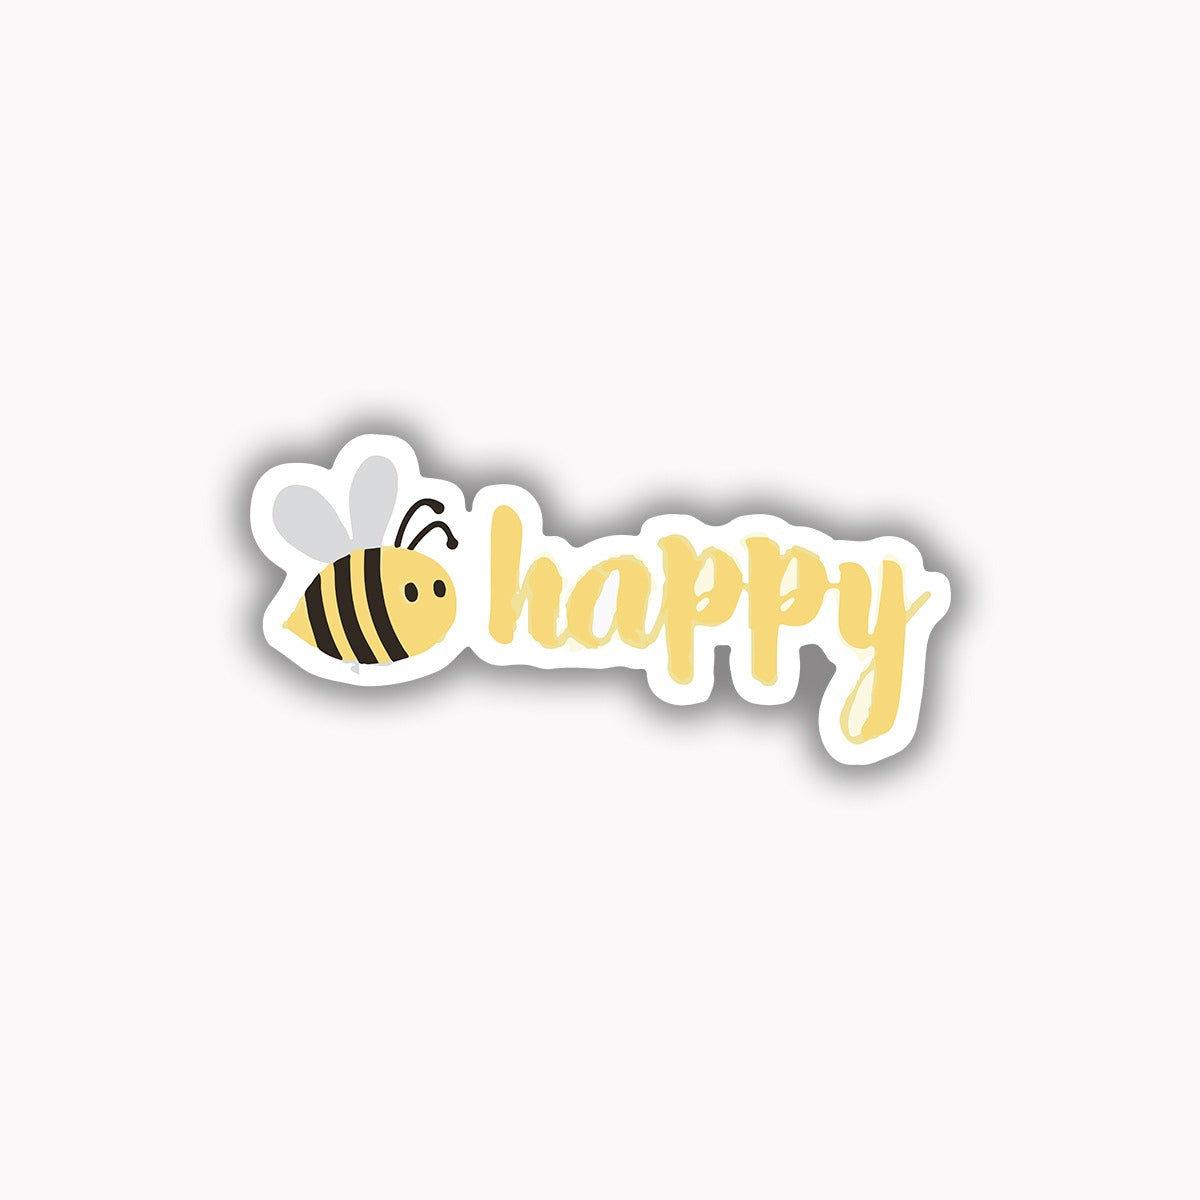 Be happy -1